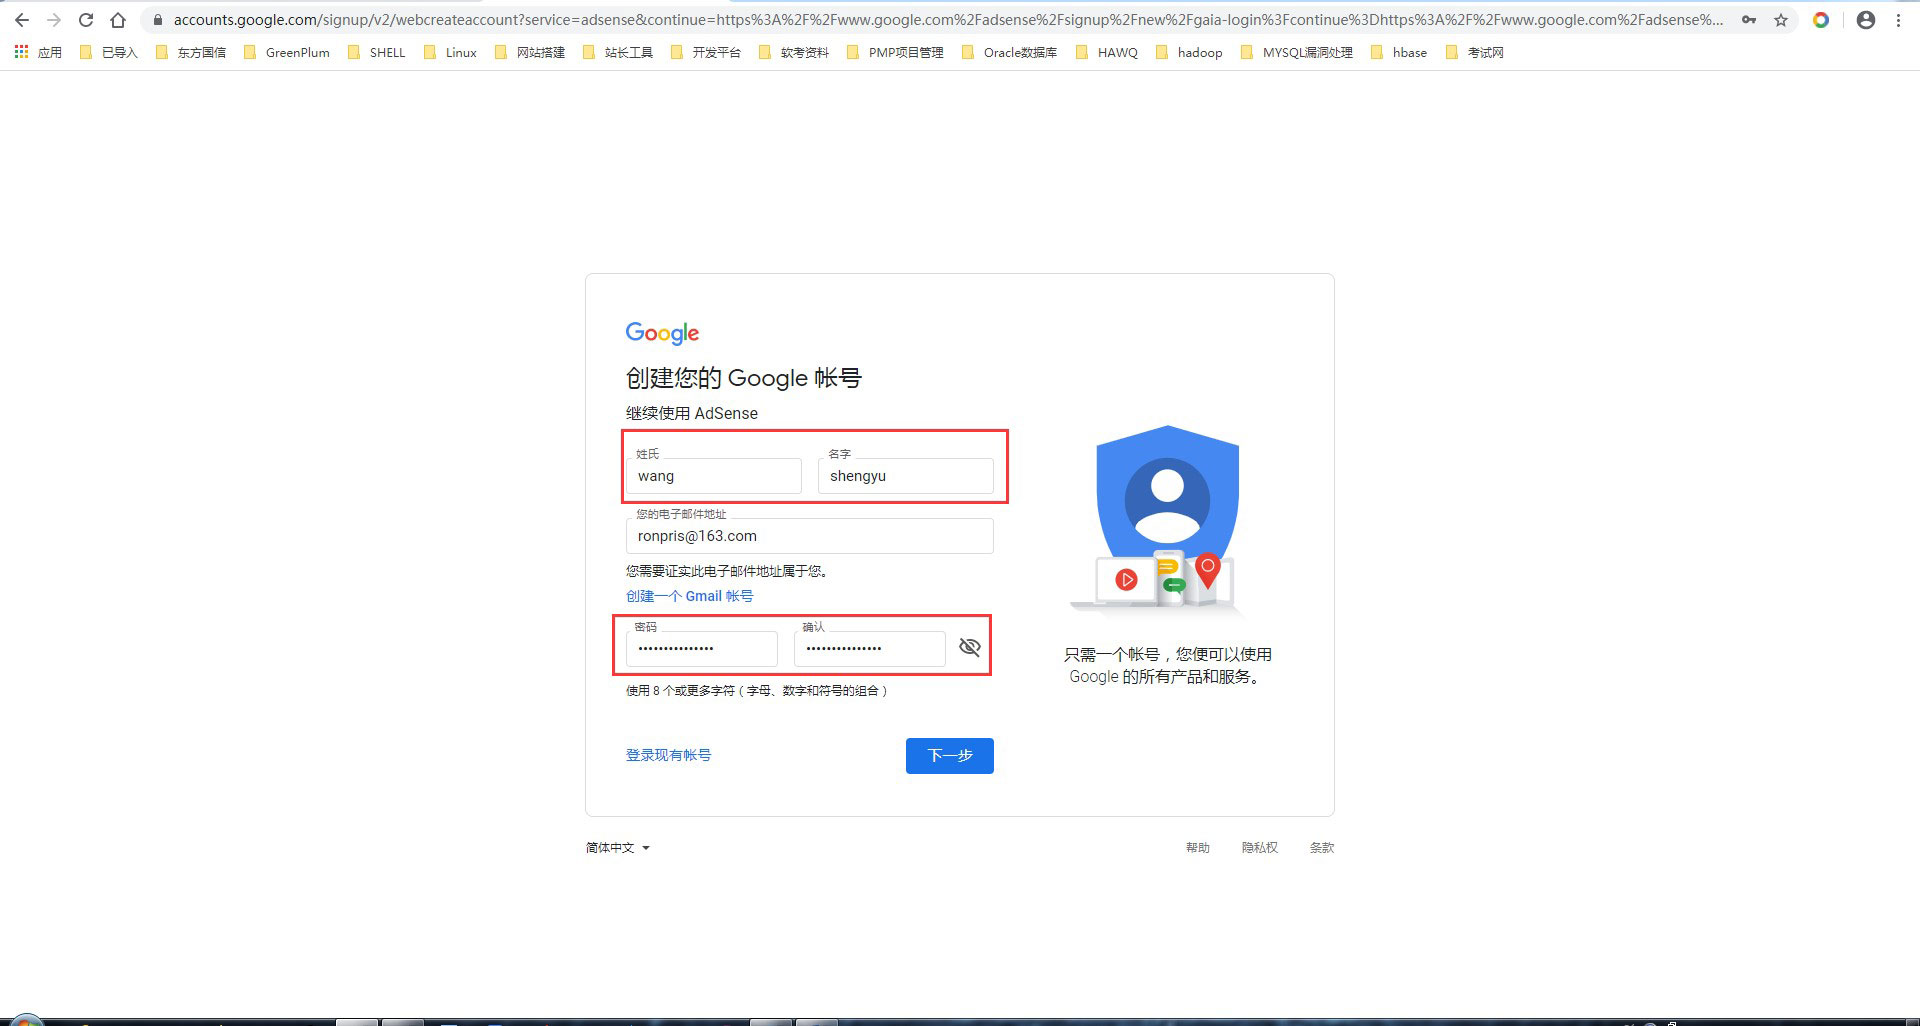 微博验证身份解除异常_谷歌邮箱登录验证身份异常_谷歌需要验证身份